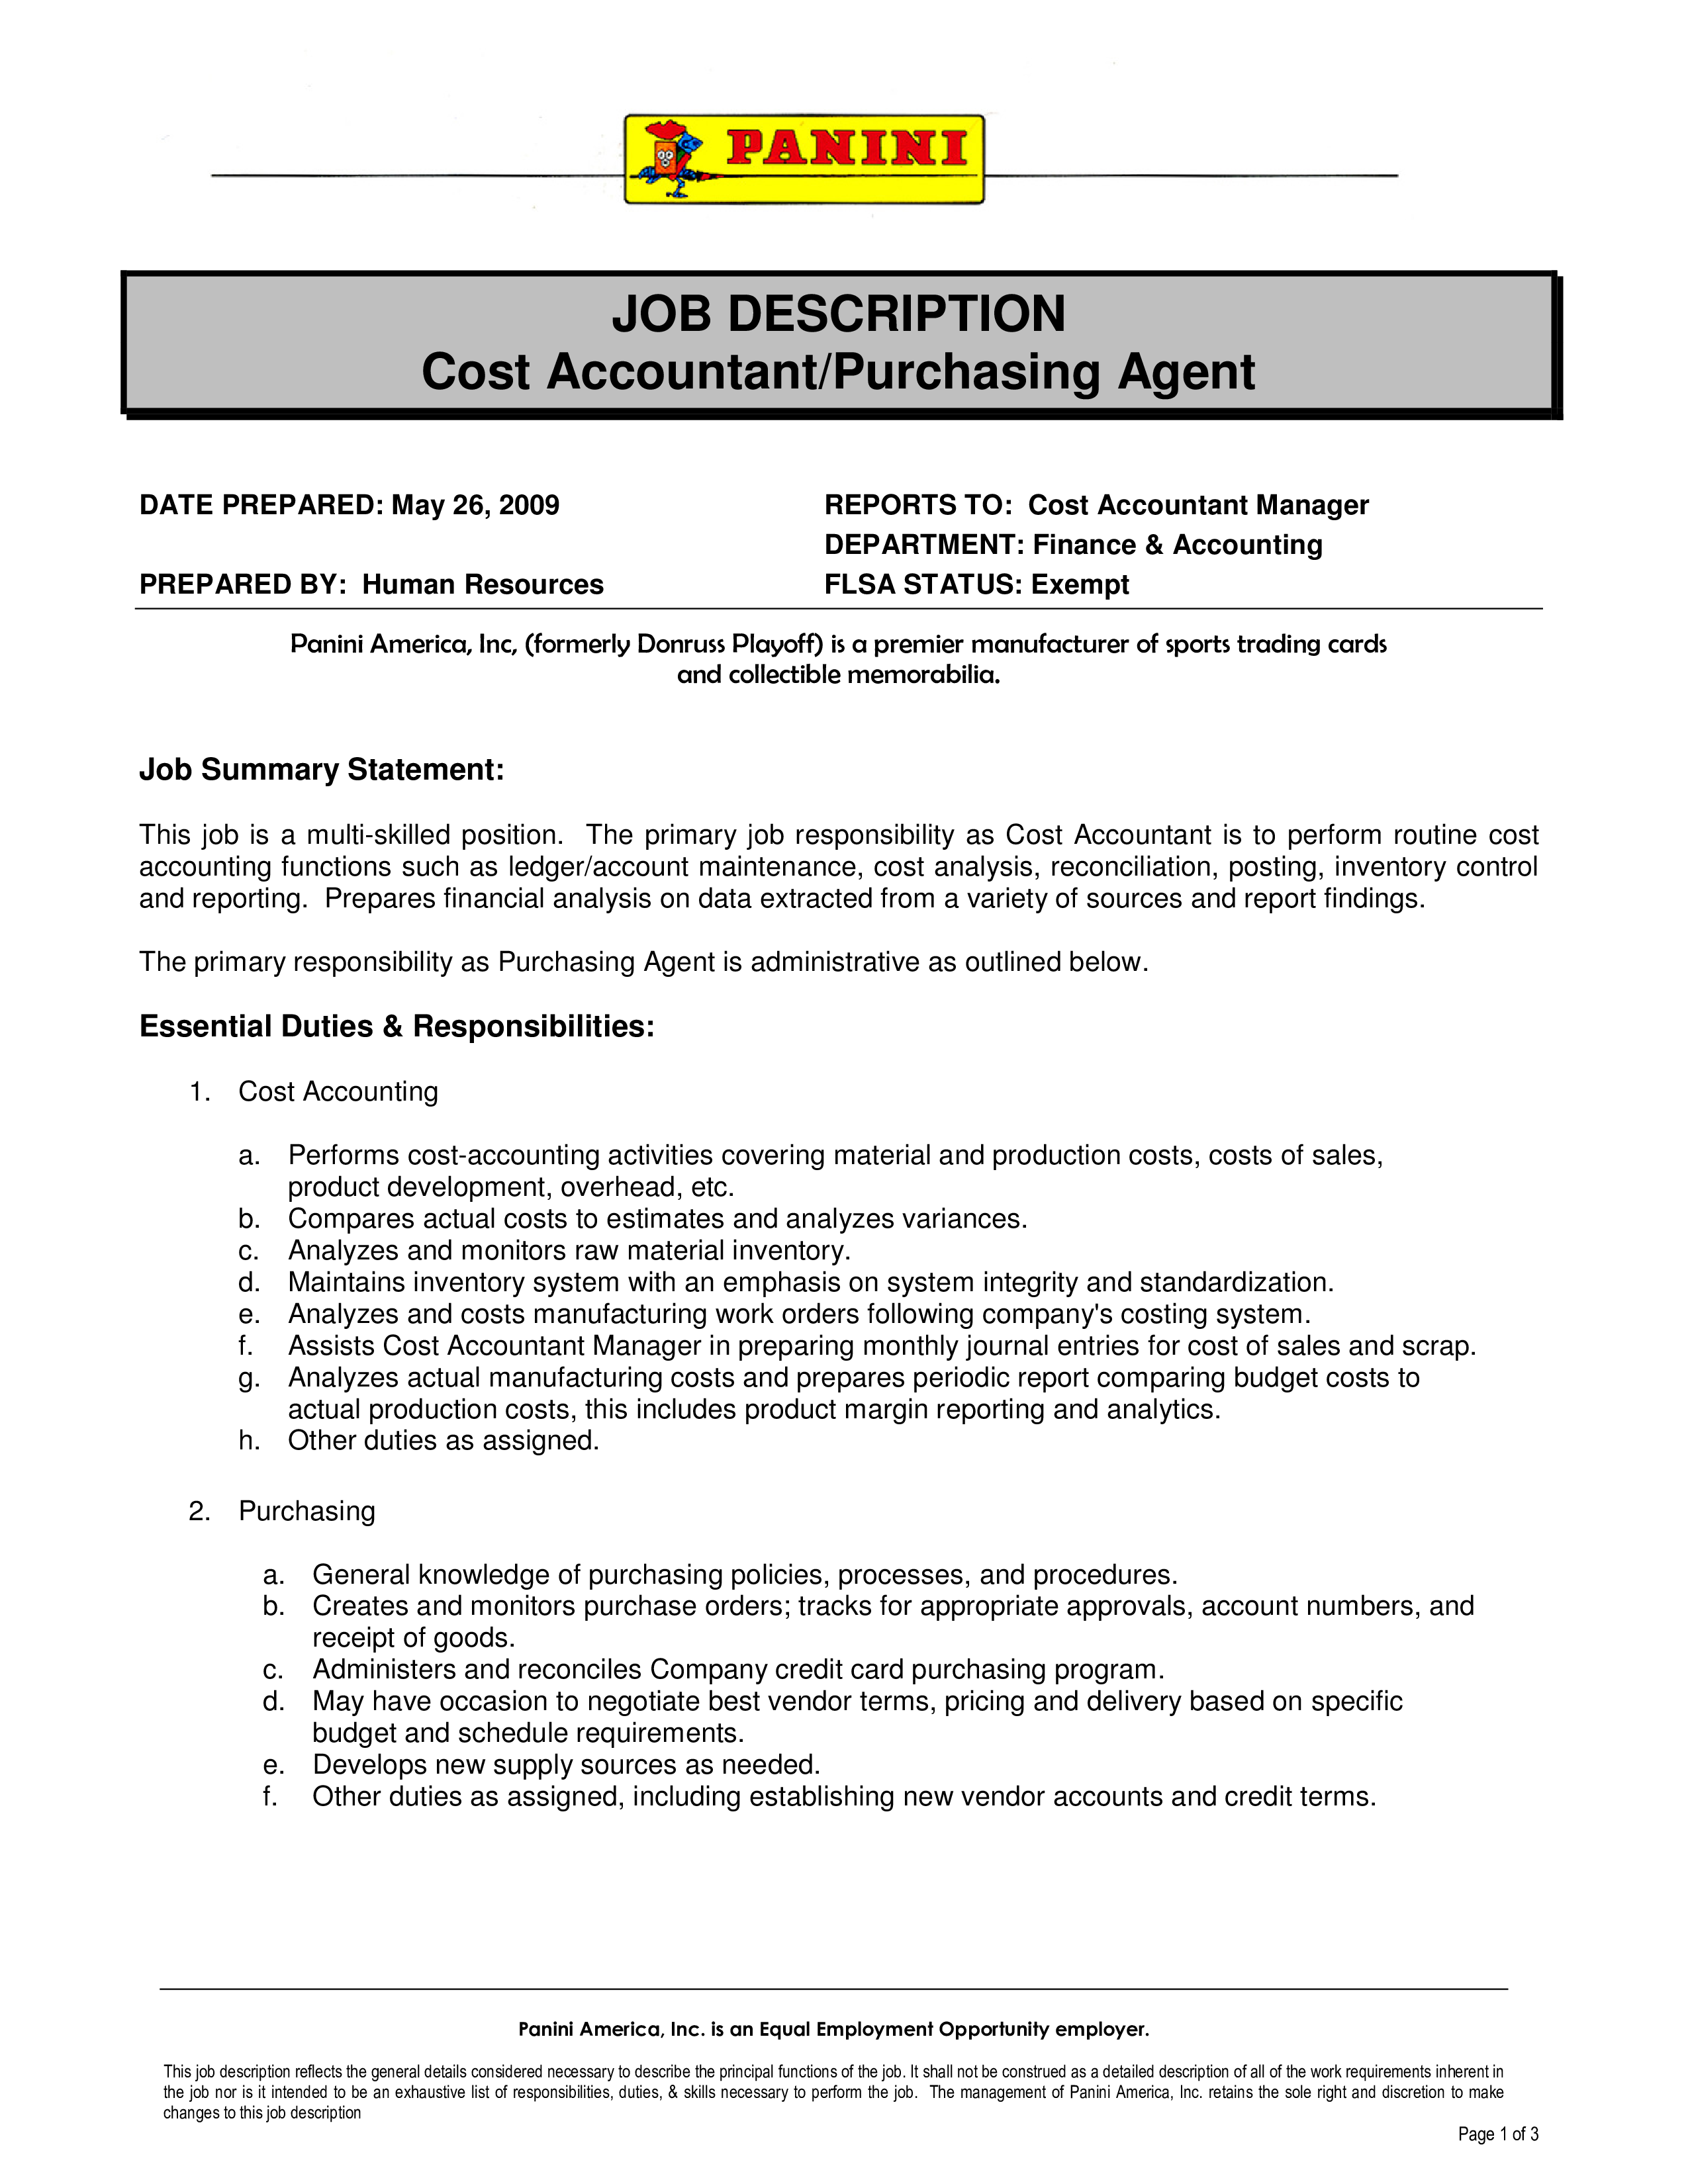 Cash Accountant Purchasing Agent Job Description main image